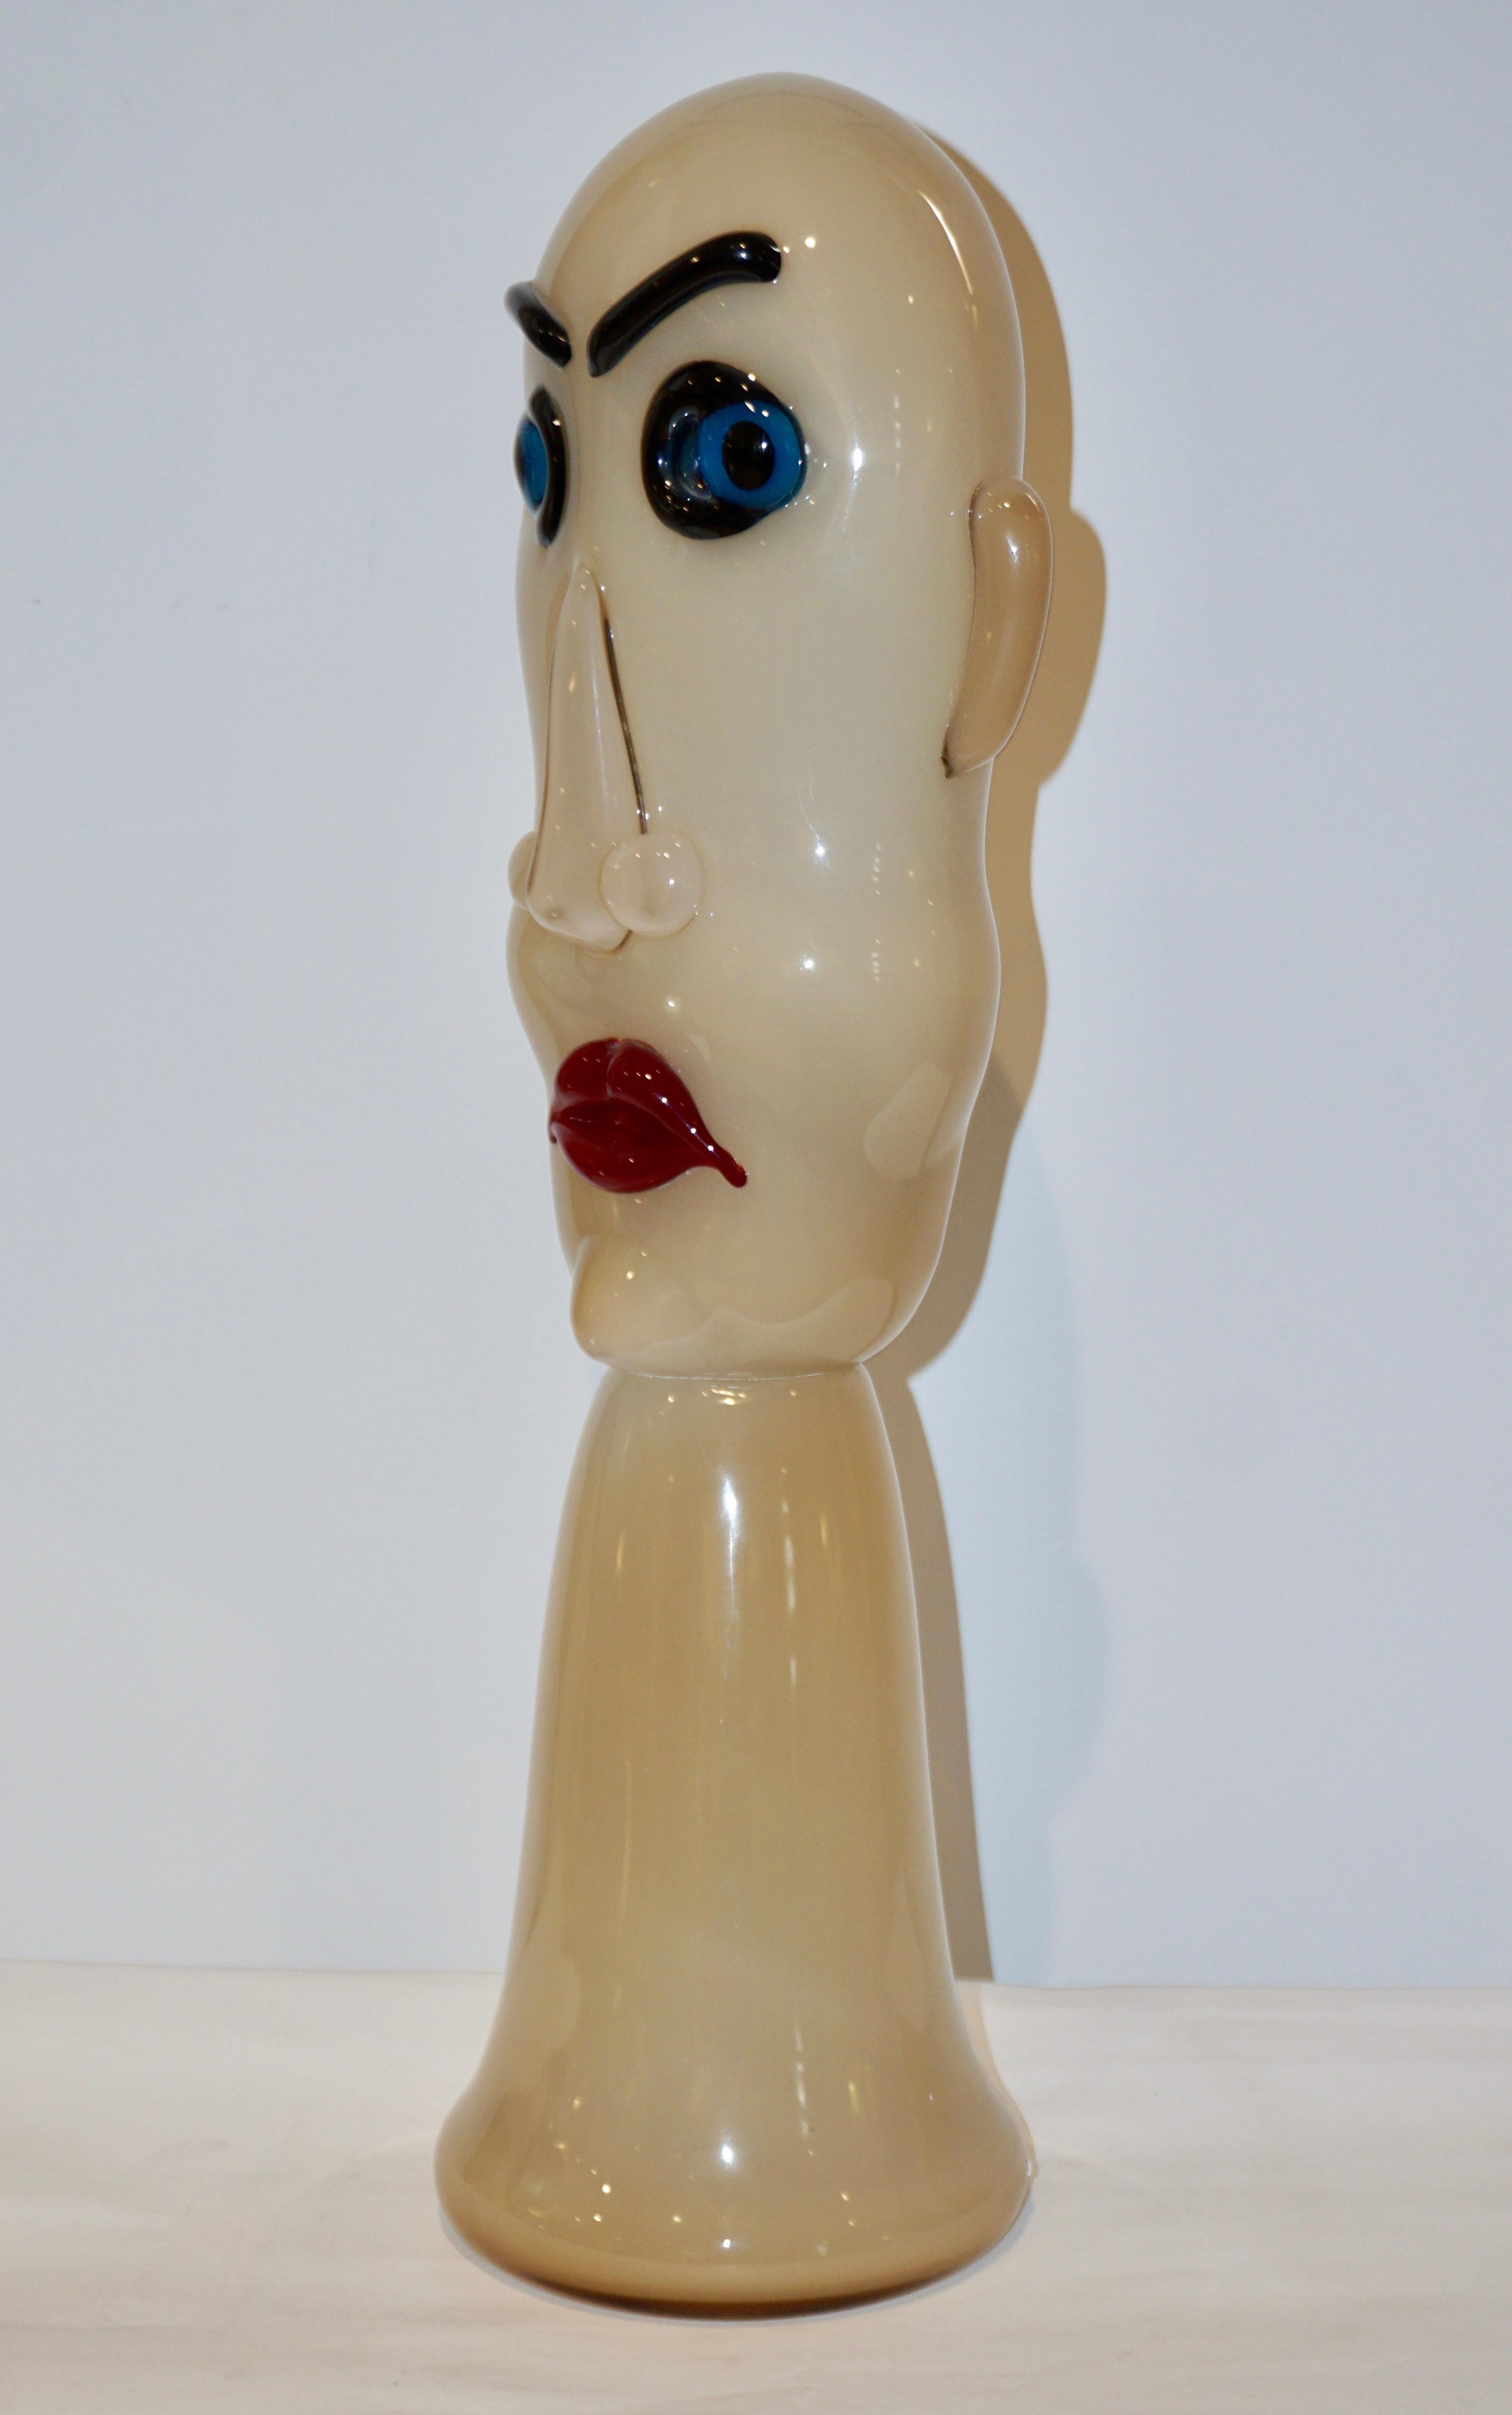 Une sculpture de tête soufflée à la bouche, de style moderniste, des années 1980, en verre de Murano coloré, en blanc laiteux ivoire, le visage aux yeux bleus et aux lèvres rouges. Cette production a été très limitée, chaque pièce étant fabriquée